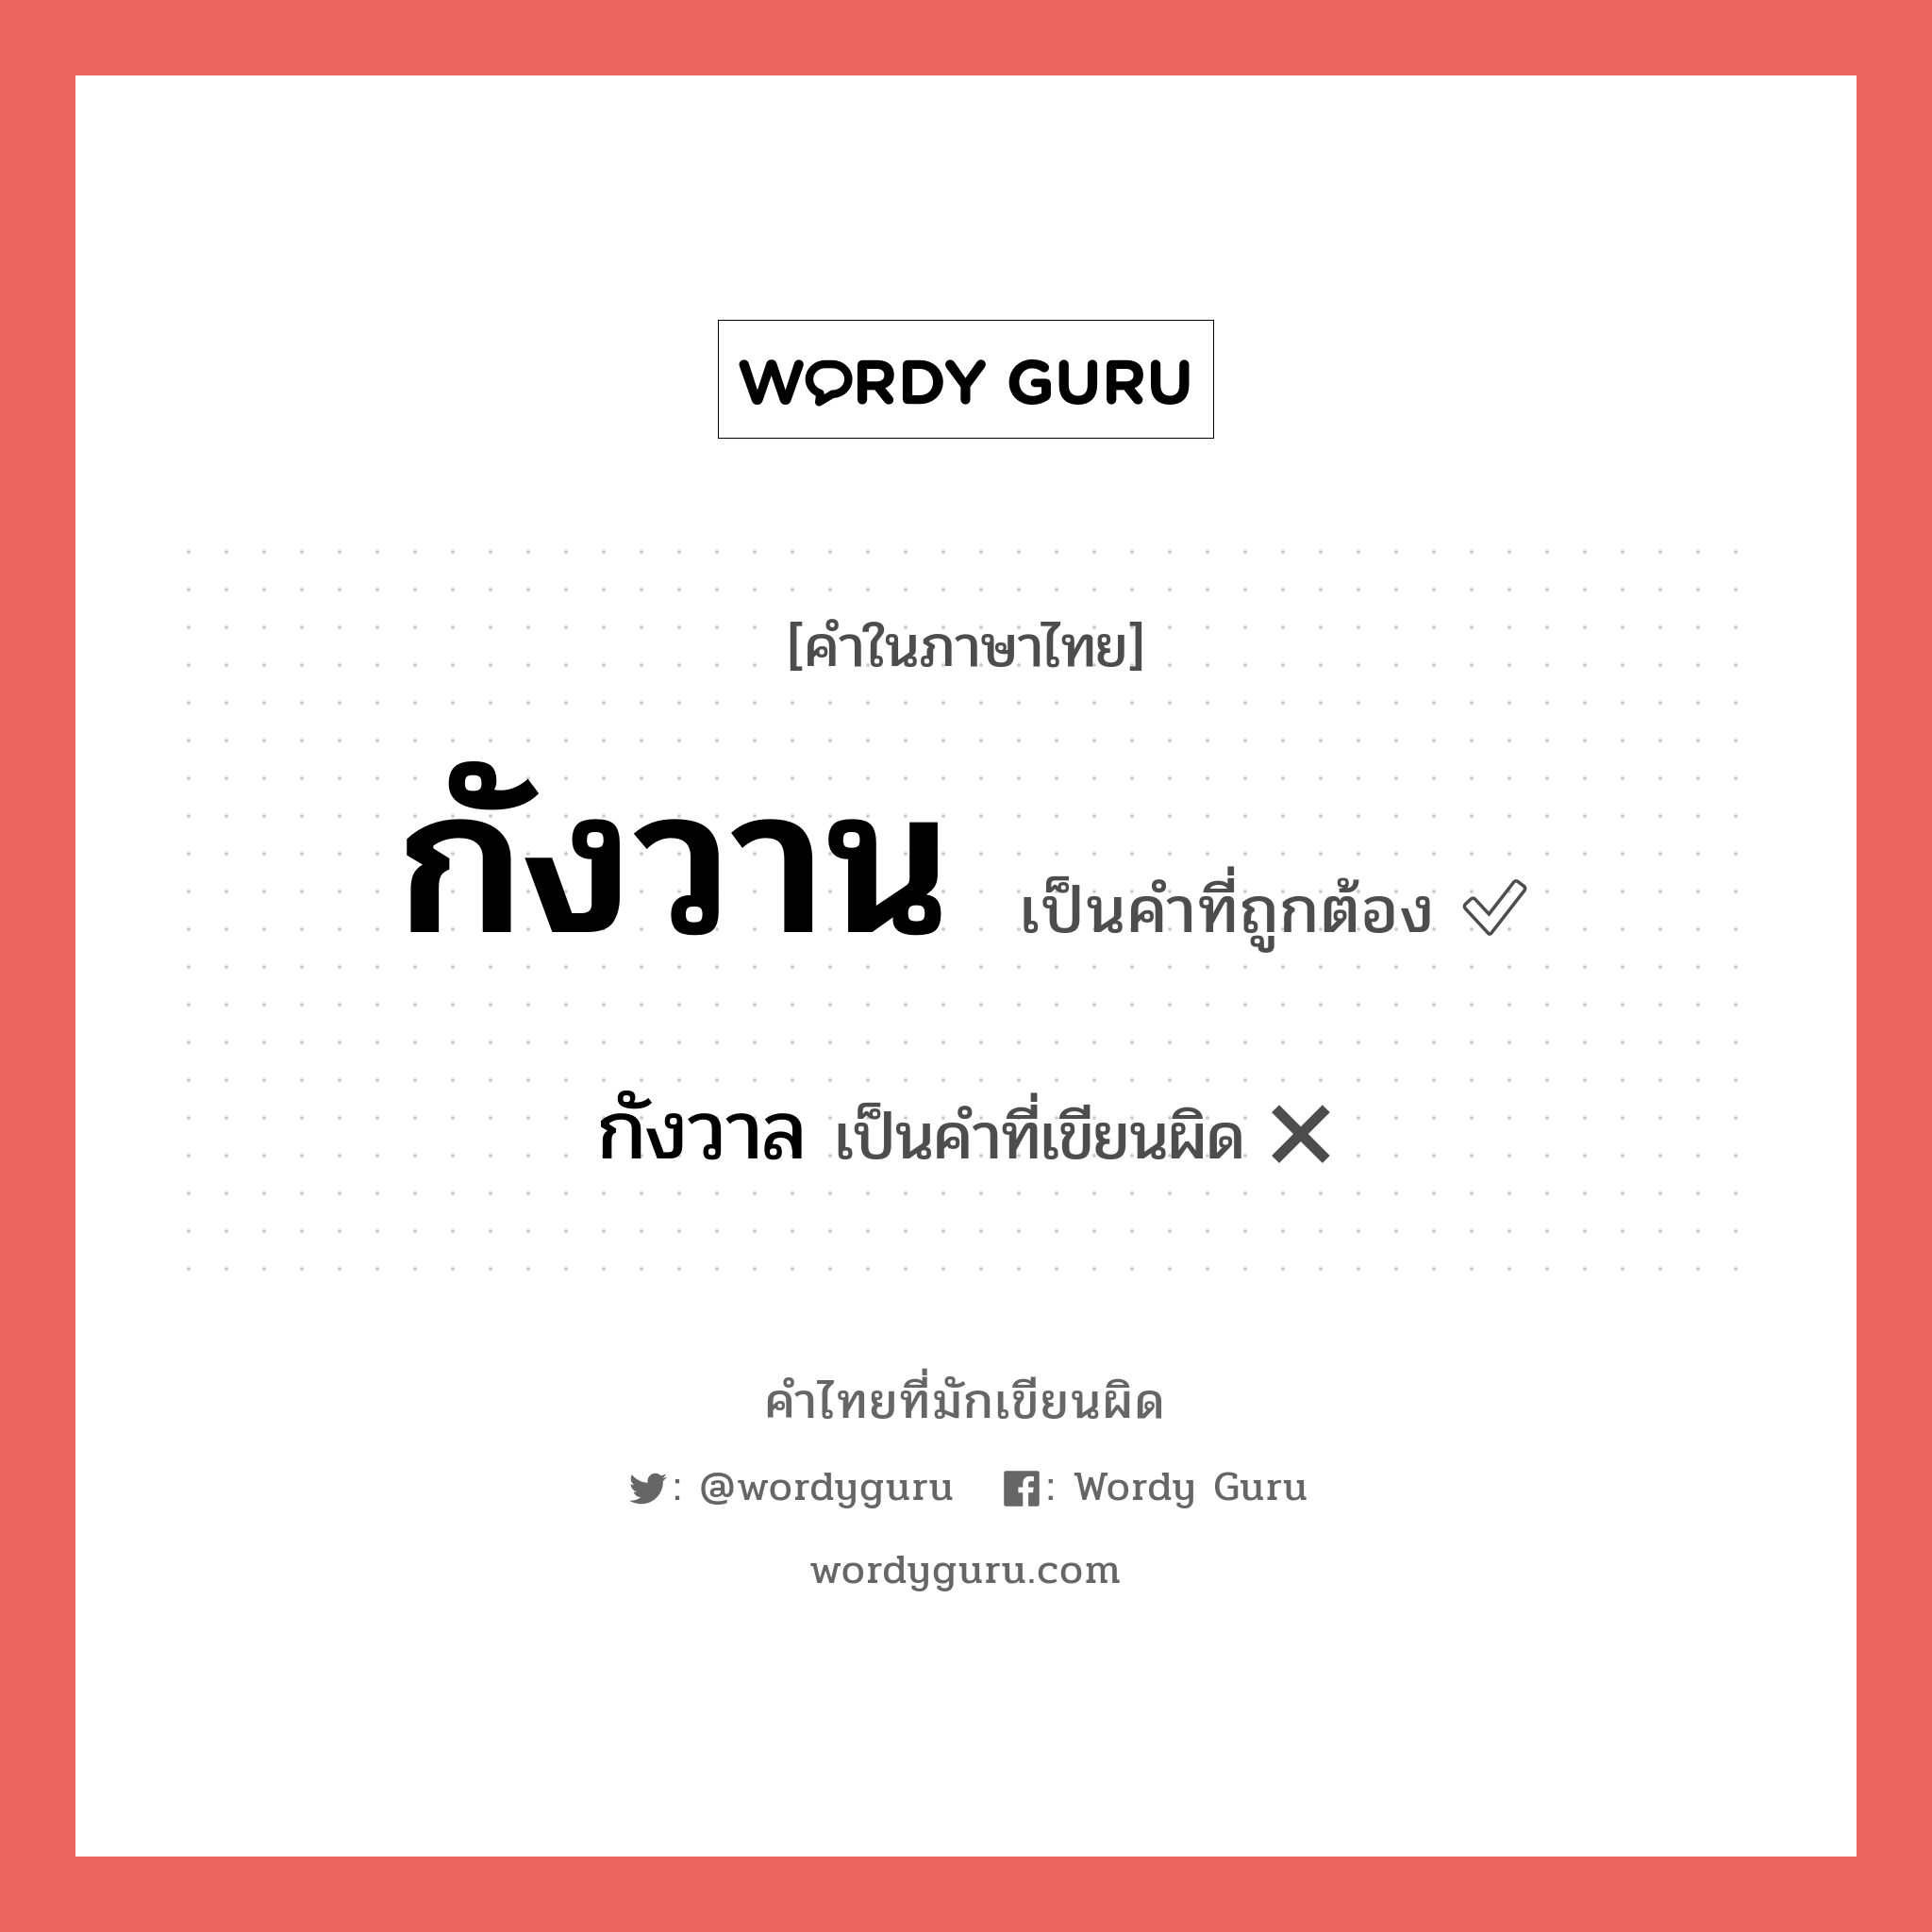 กังวาล หรือ กังวาน คำไหนเขียนถูก?, คำในภาษาไทยที่มักเขียนผิด กังวาล คำที่ผิด ❌ กังวาน